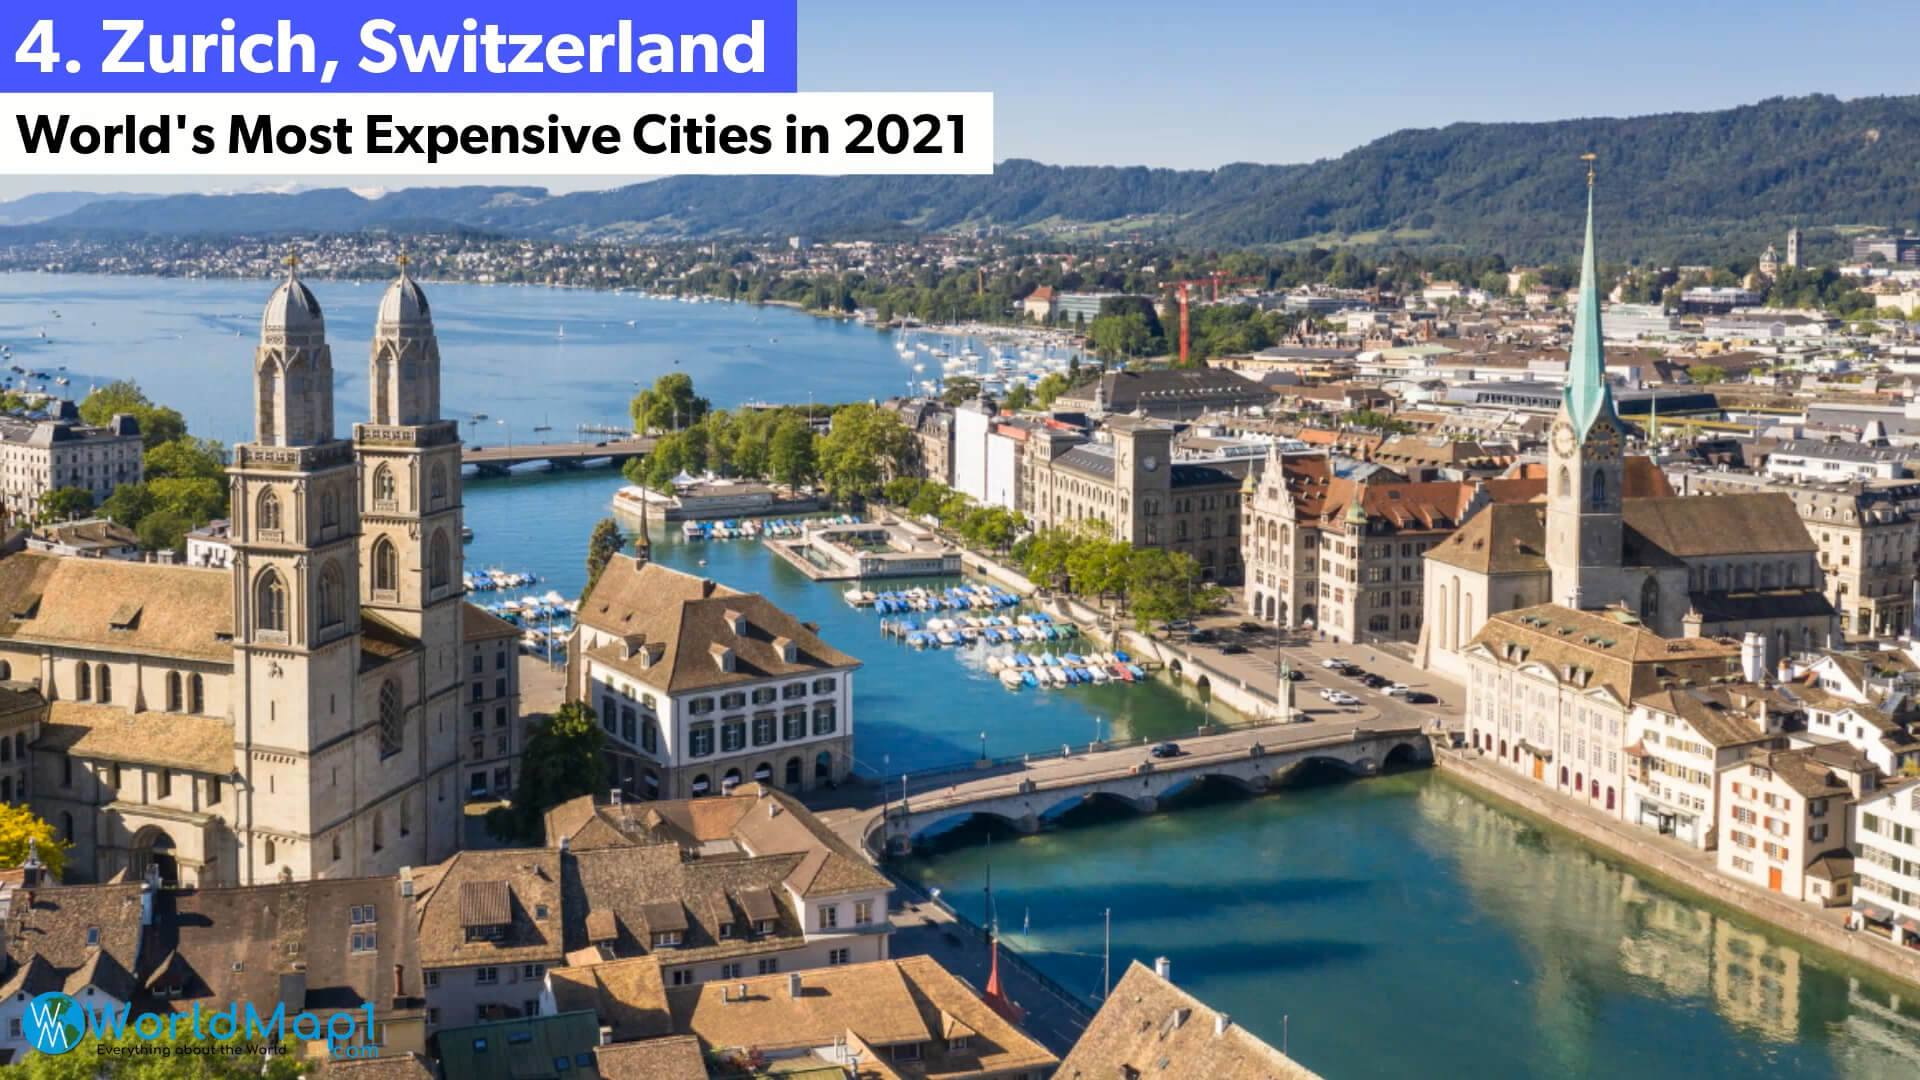 World's Most Expensive Cities - Zurich, Switzerland